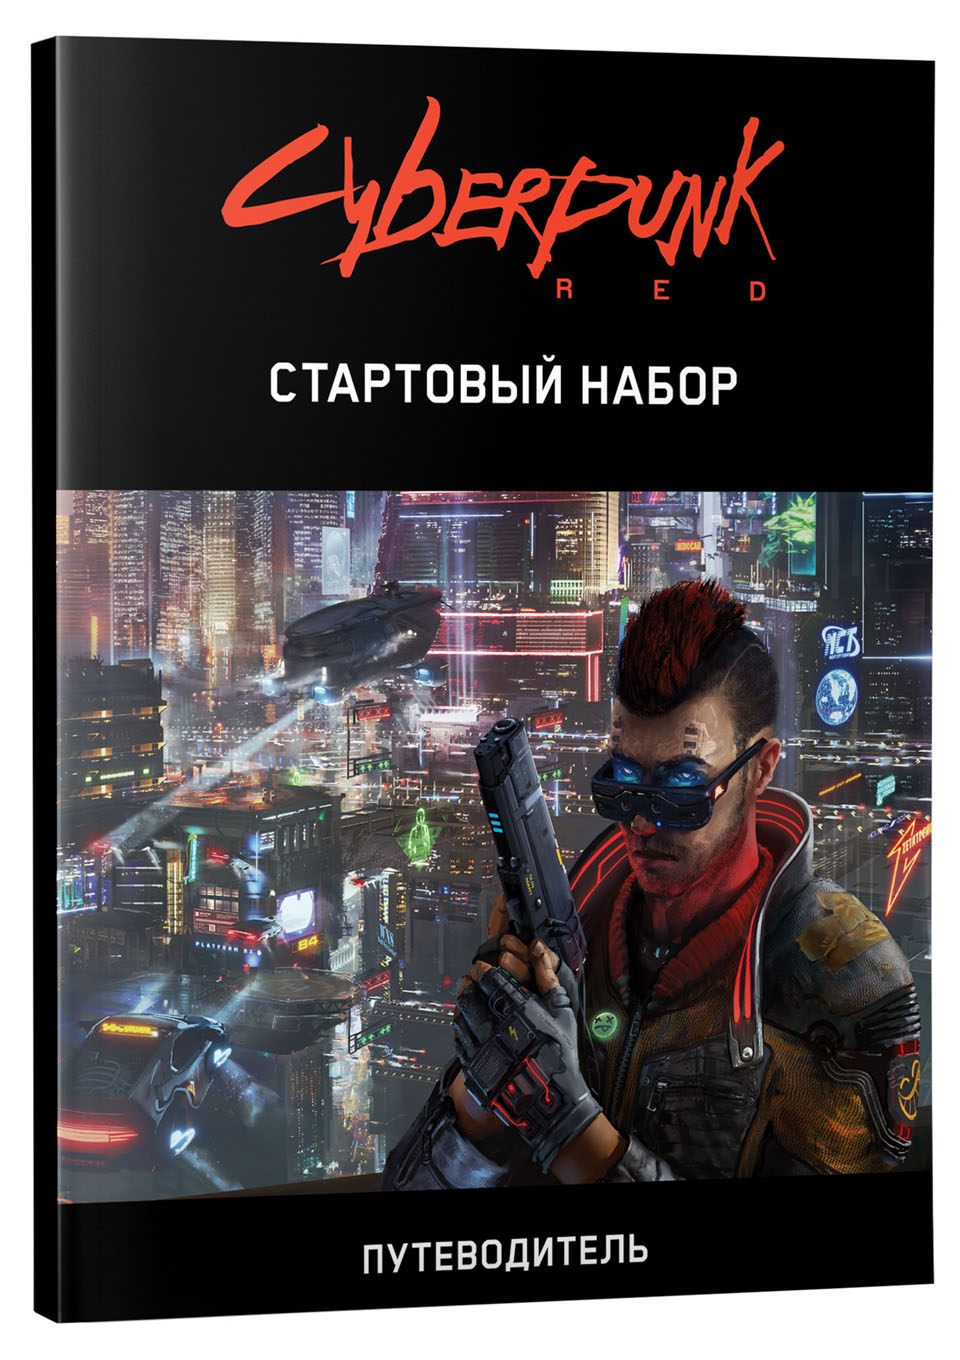 Cyberpunk red настольная игра купить на русском фото 16